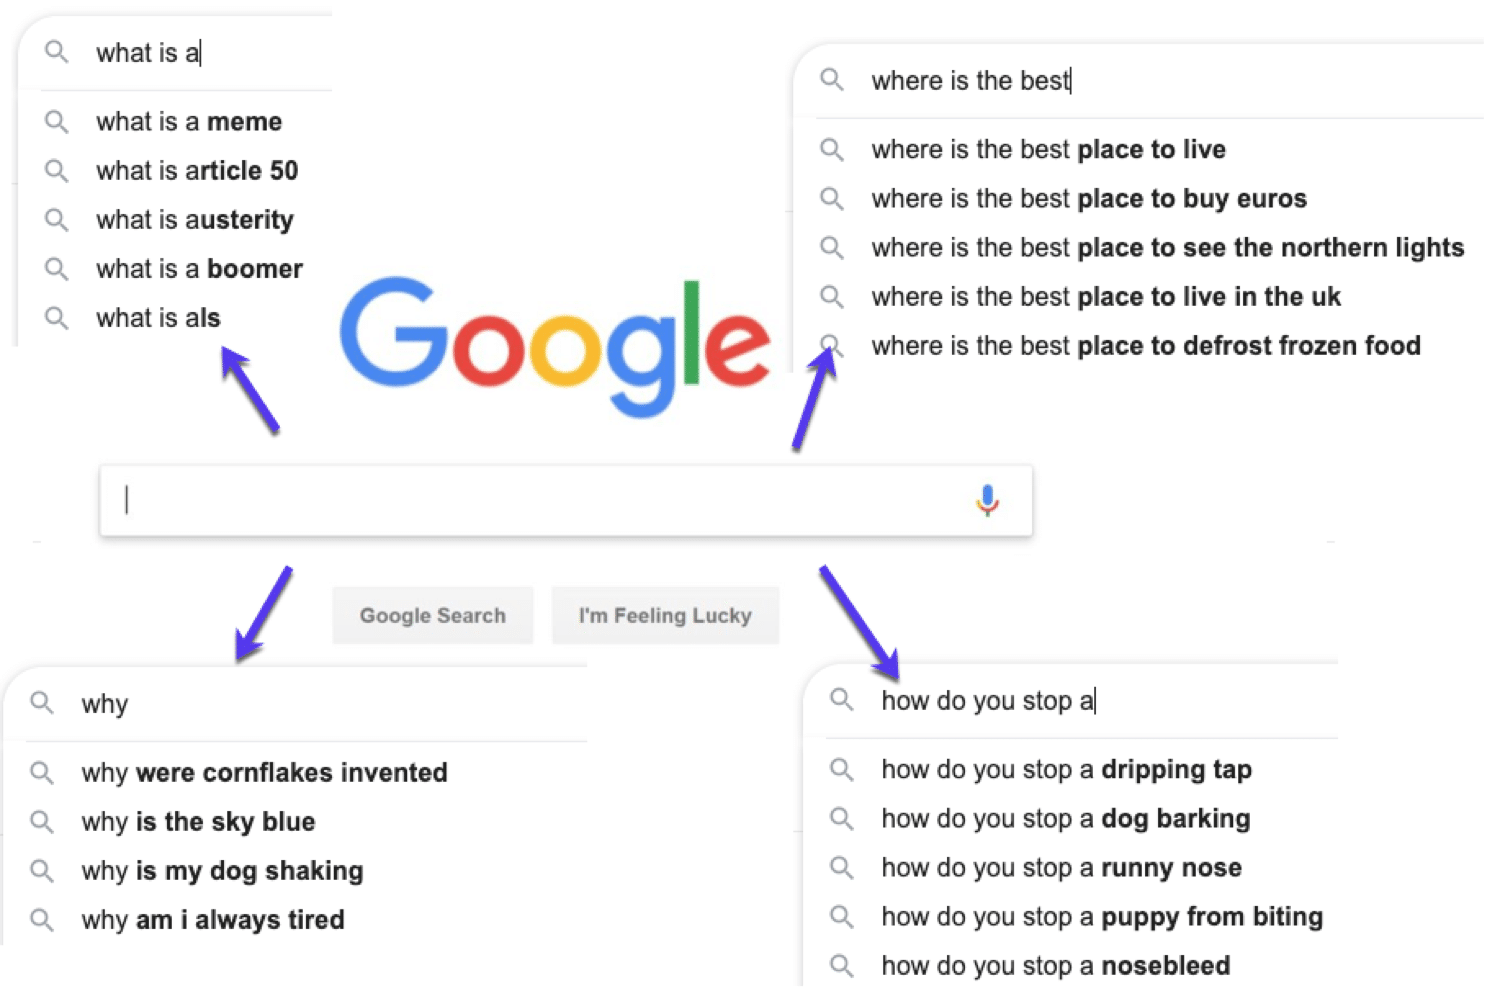 Exemples de questions que les personnes recherchent sur Google